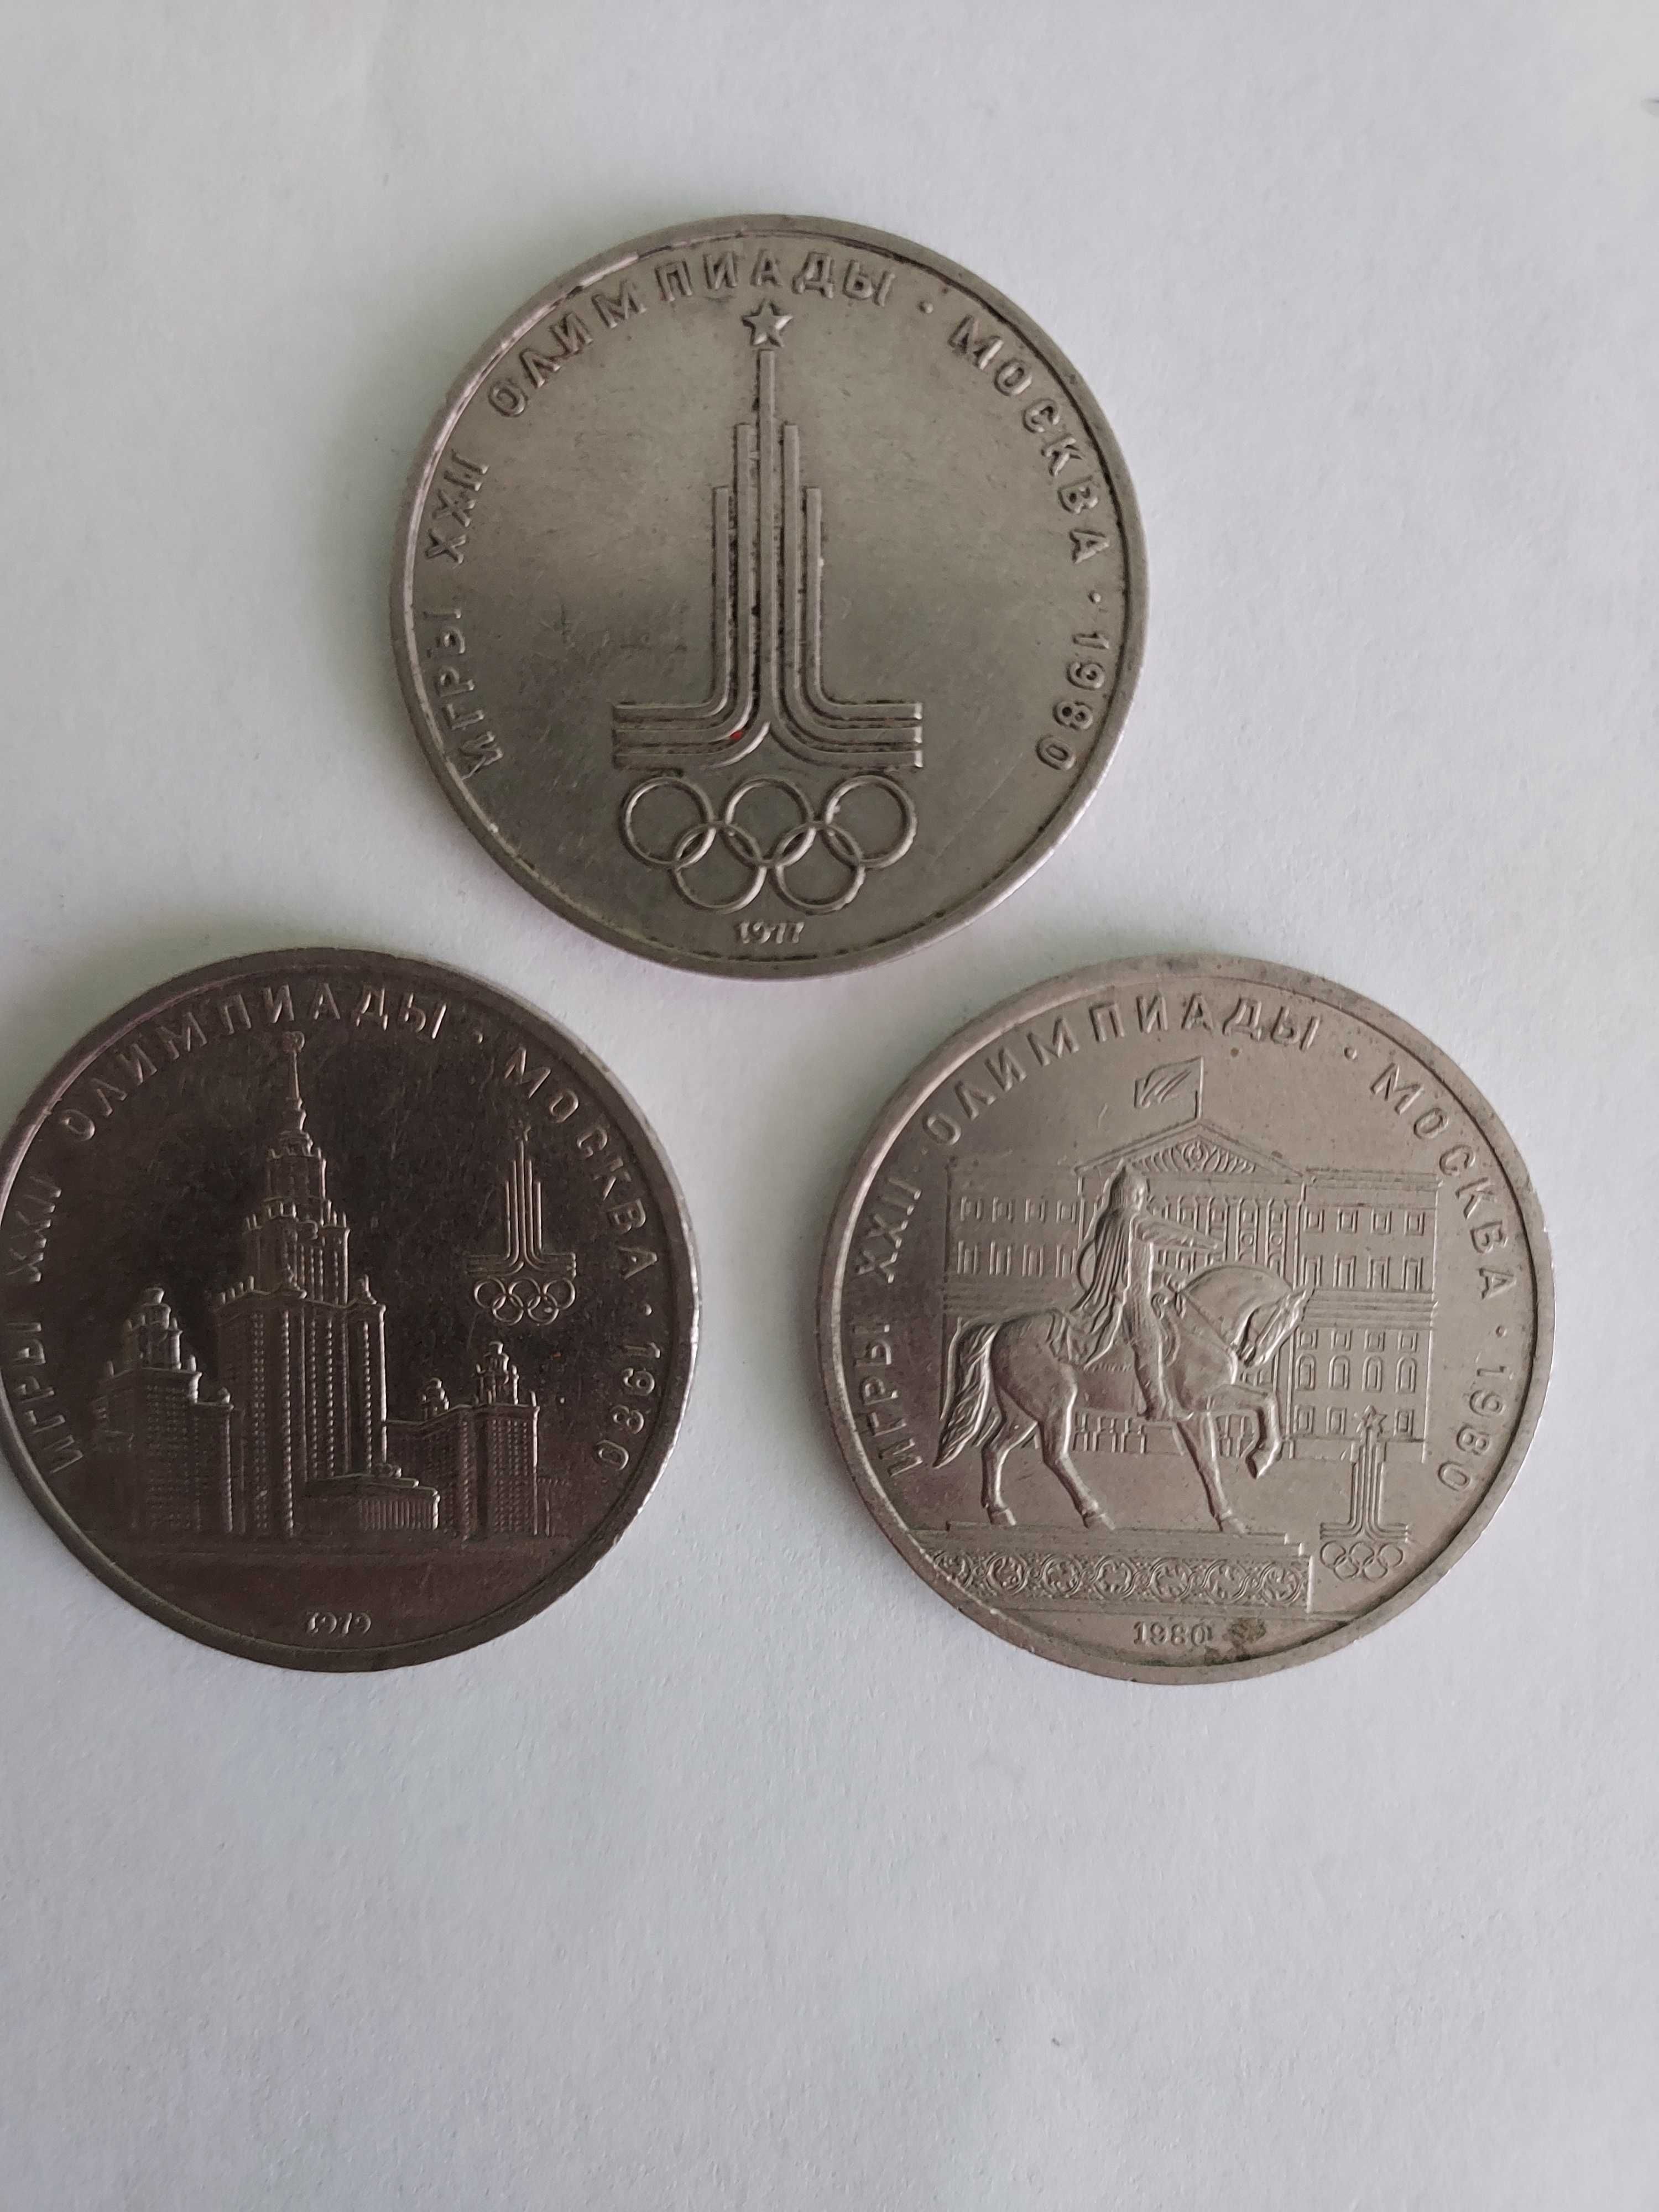 Олімпіада 80. 3 монети